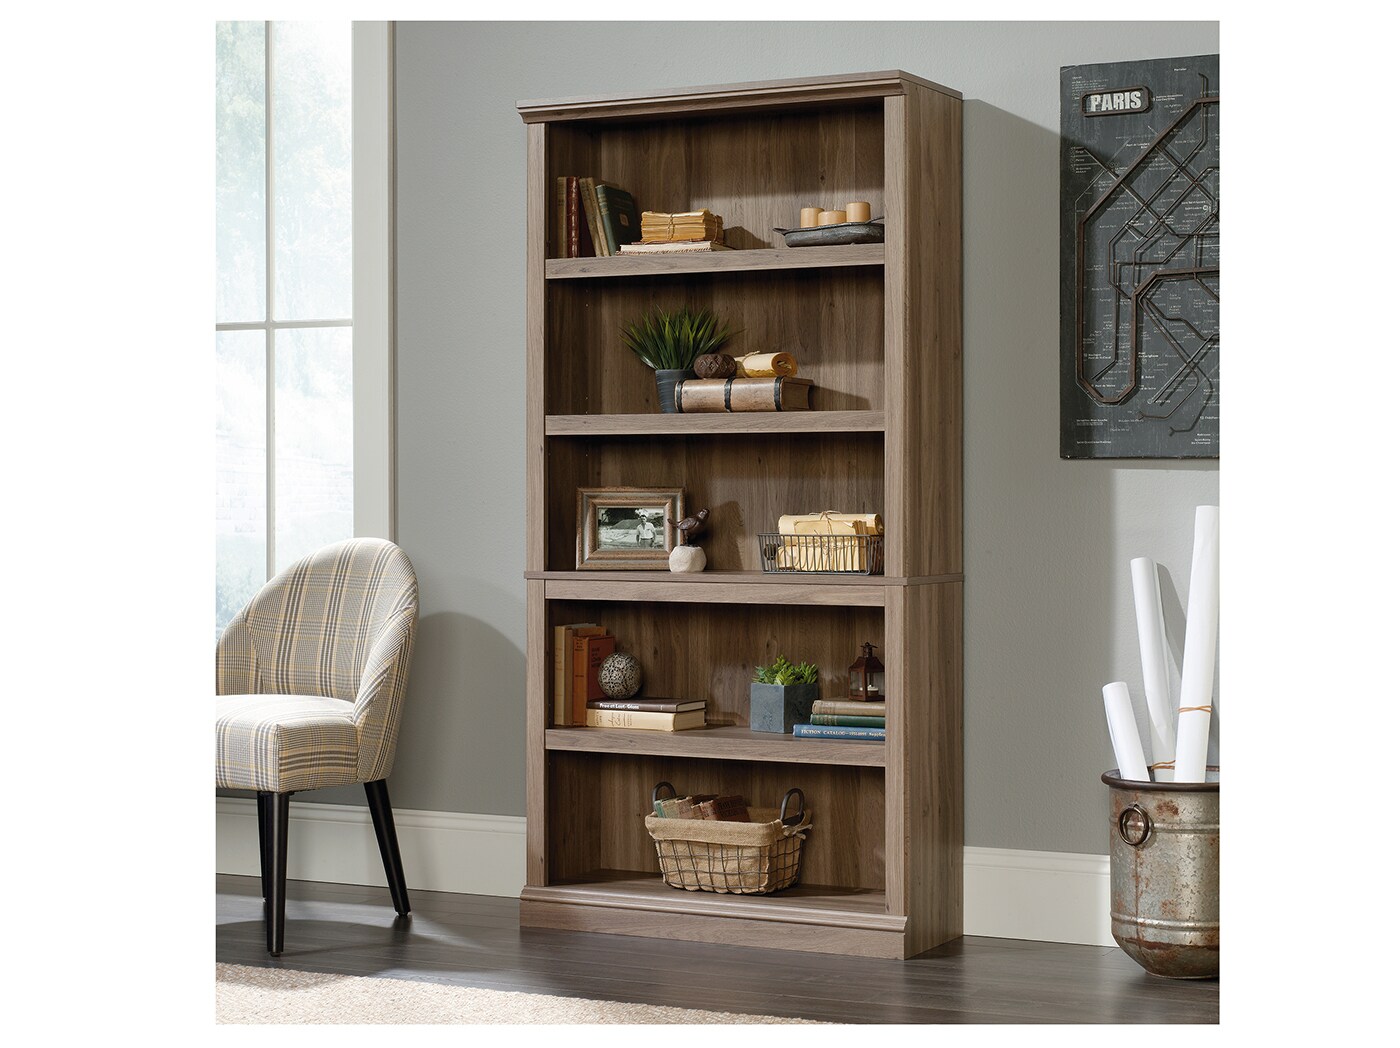 Sauder Select 5 Shelf Bookcase in Washington Cherry 